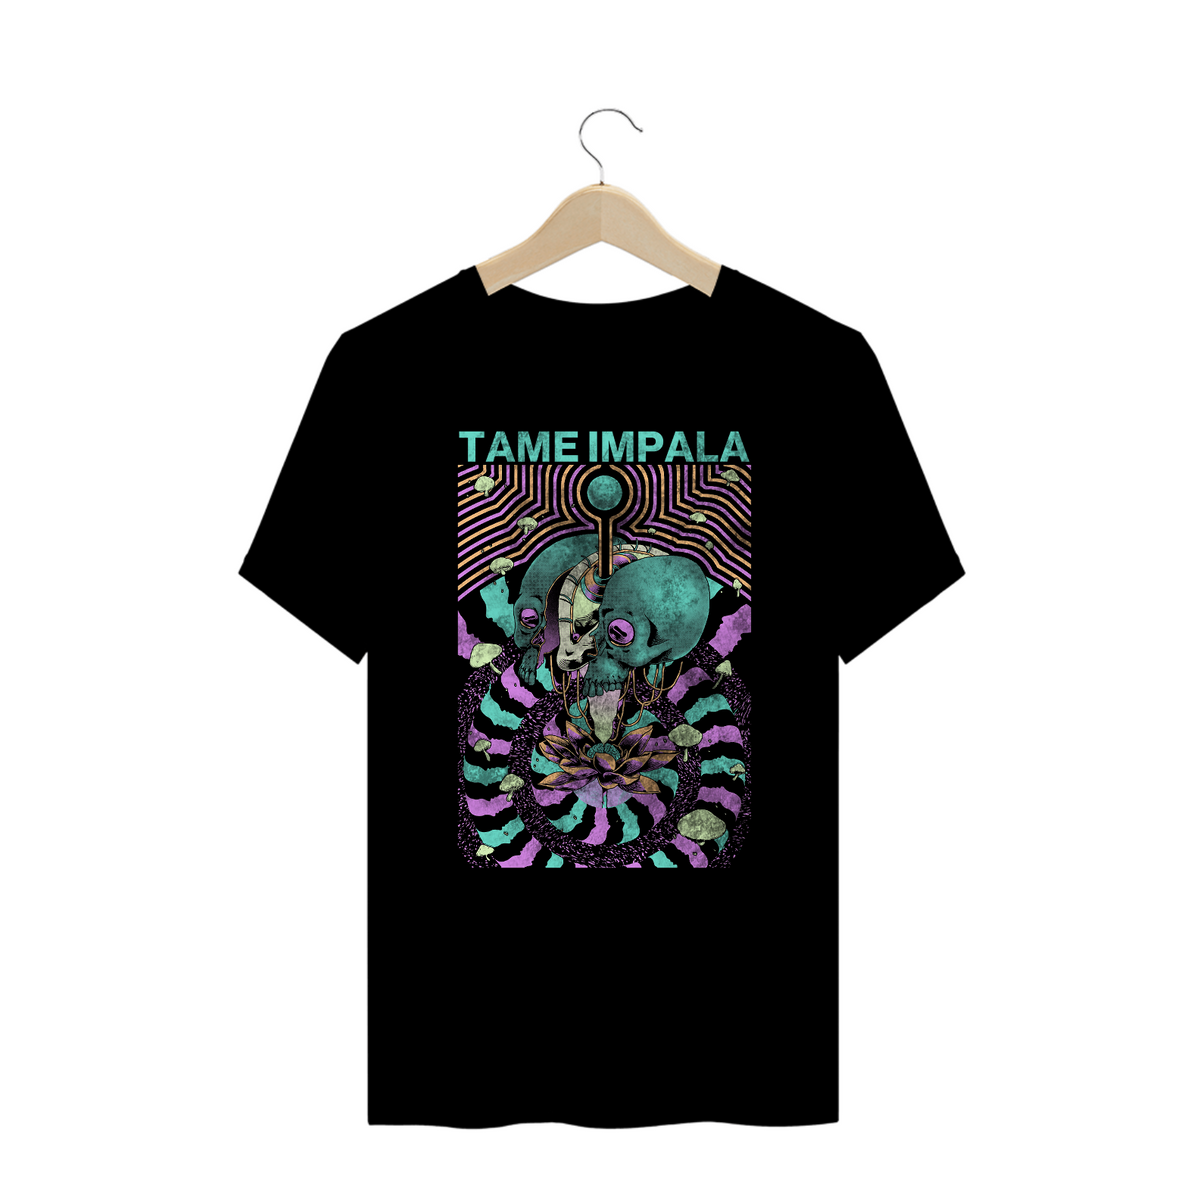 Nome do produto: Tame Impala - Plus Size